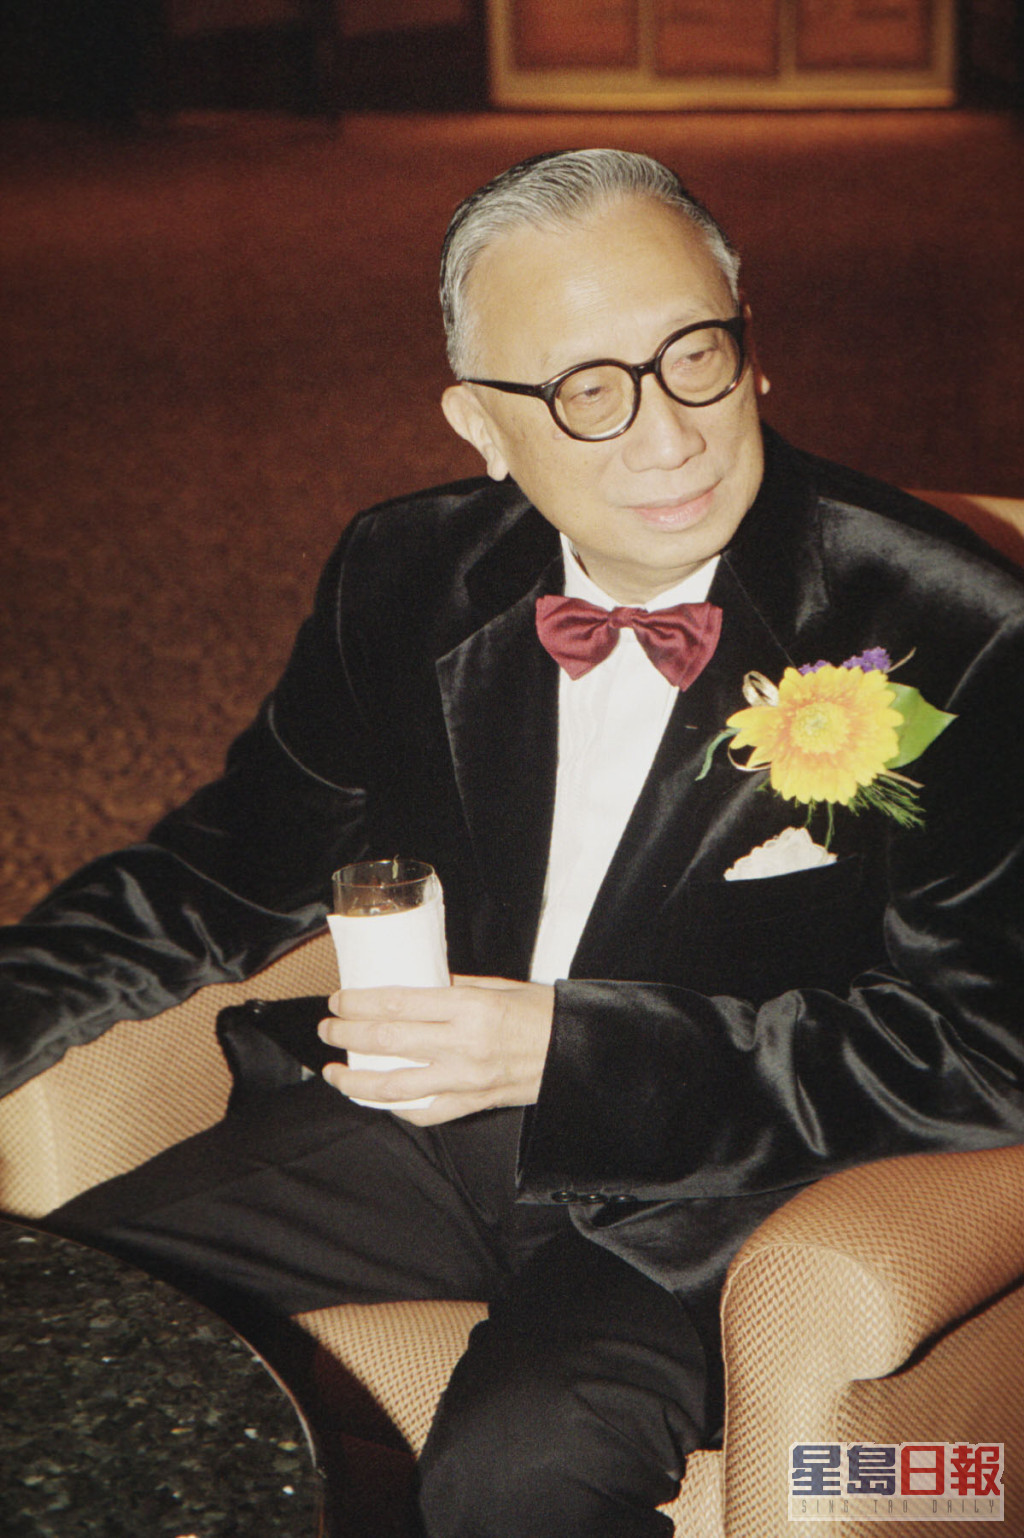 张有兴对演艺界亦甚有贡献，担任过多张公职的他曾任香港艺术发展局主席，首届香港国际电影节在他支持下，于1977年举行。